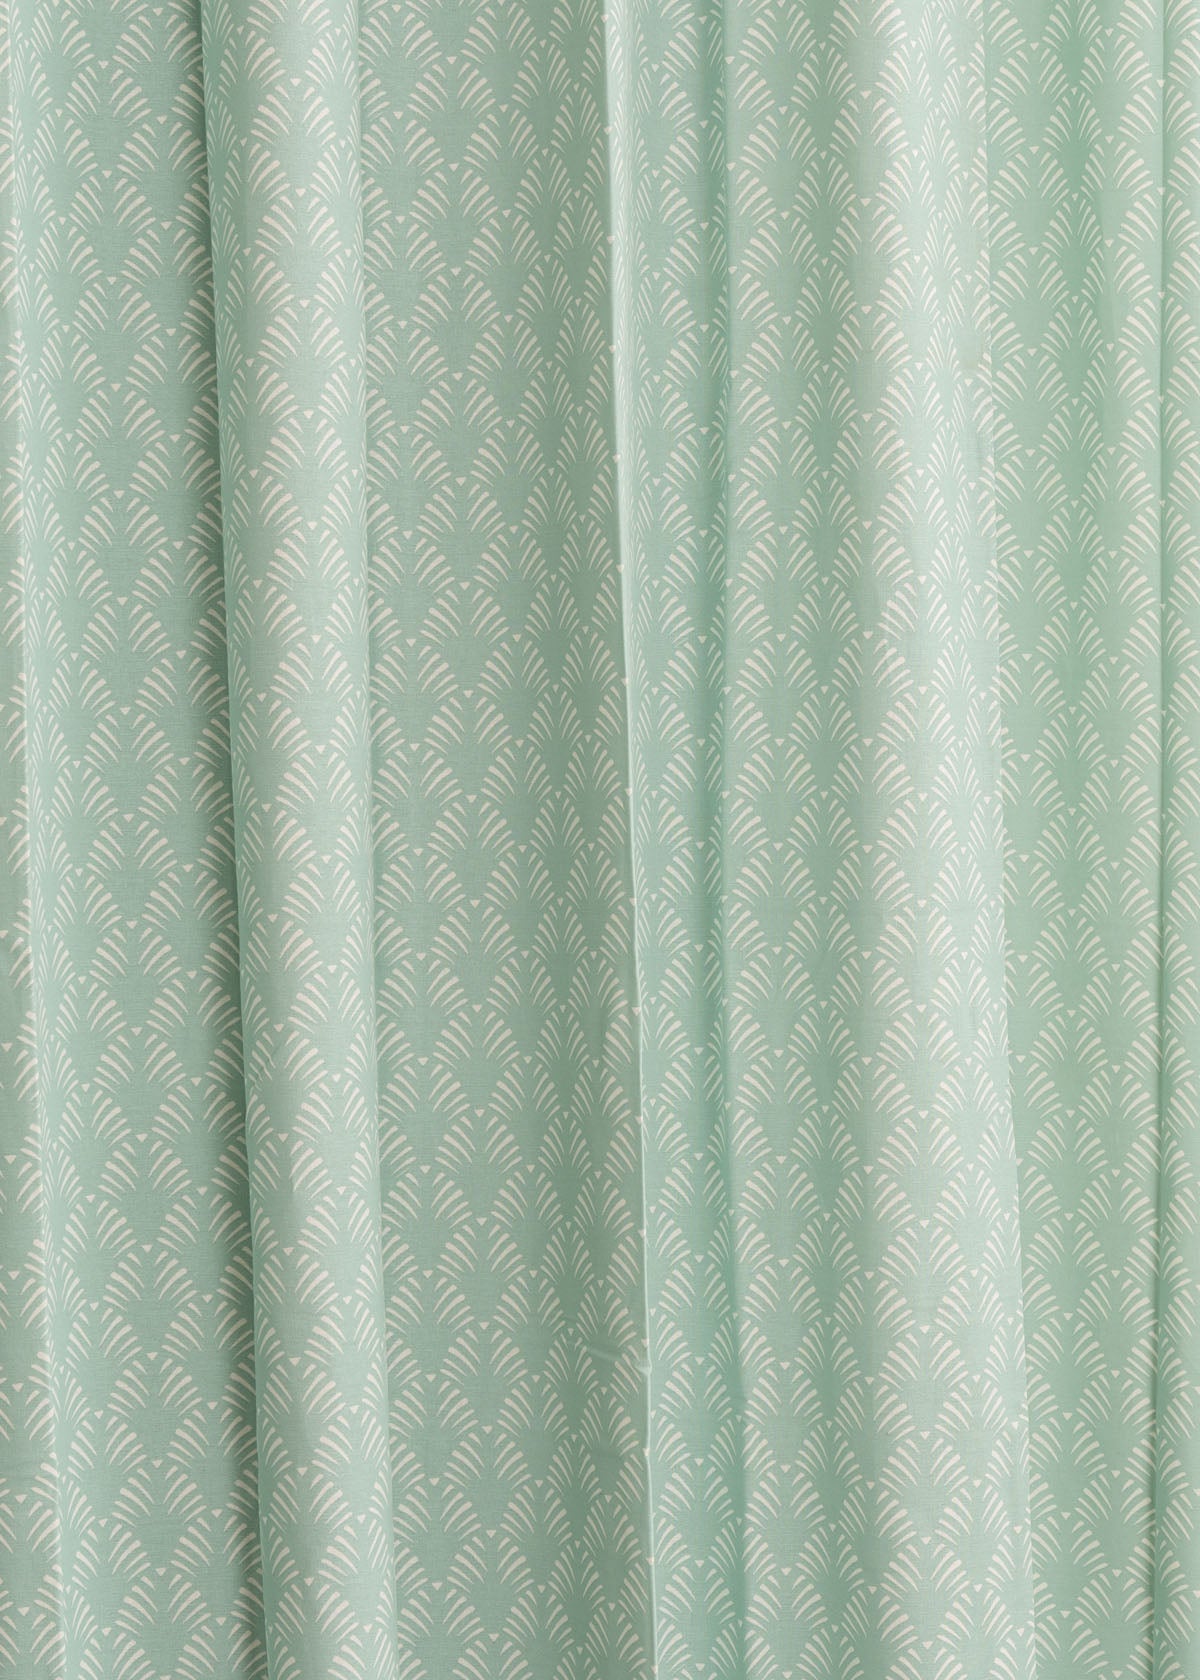 Pergola Printed Cotton Curtain - Nile Blue - Single